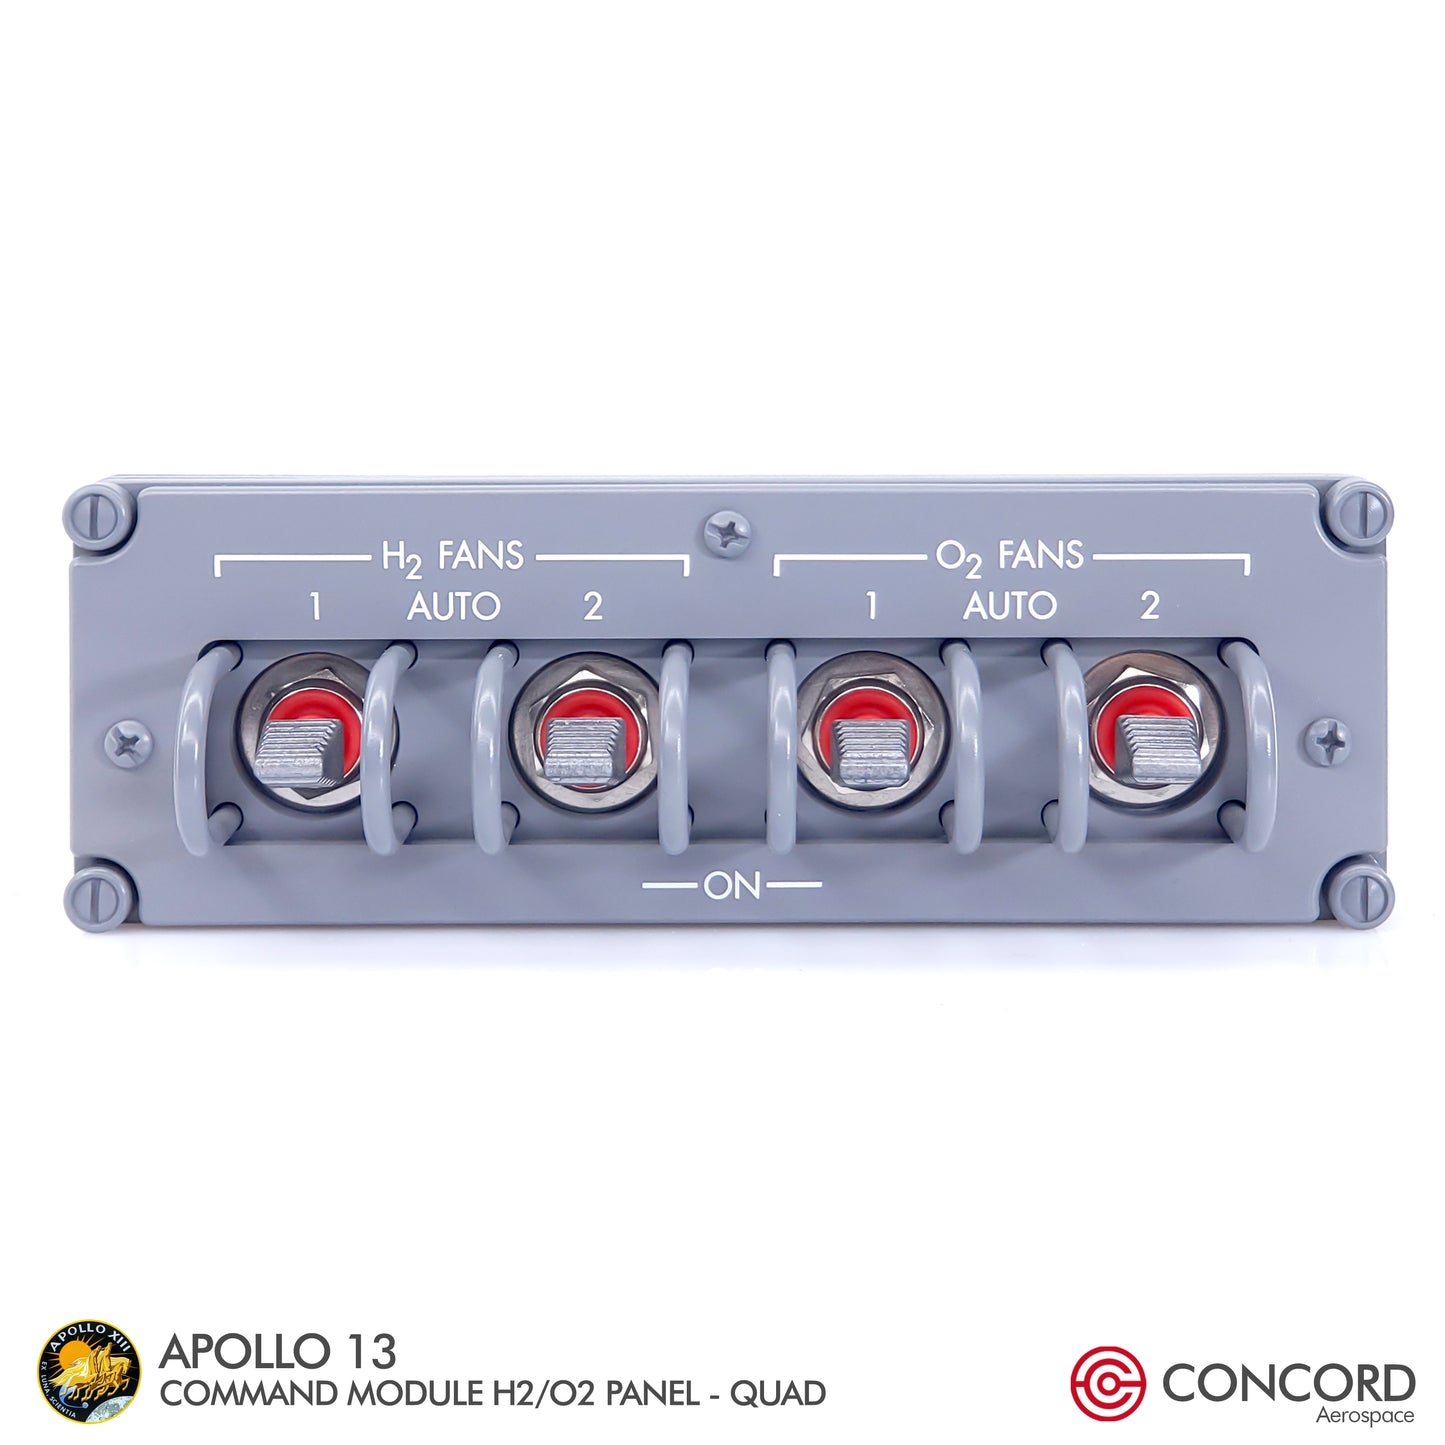 APOLLO13 COMMAND MODULE  H2/O2 FANS QUAD SWITCH PANEL - Concord Aerospace